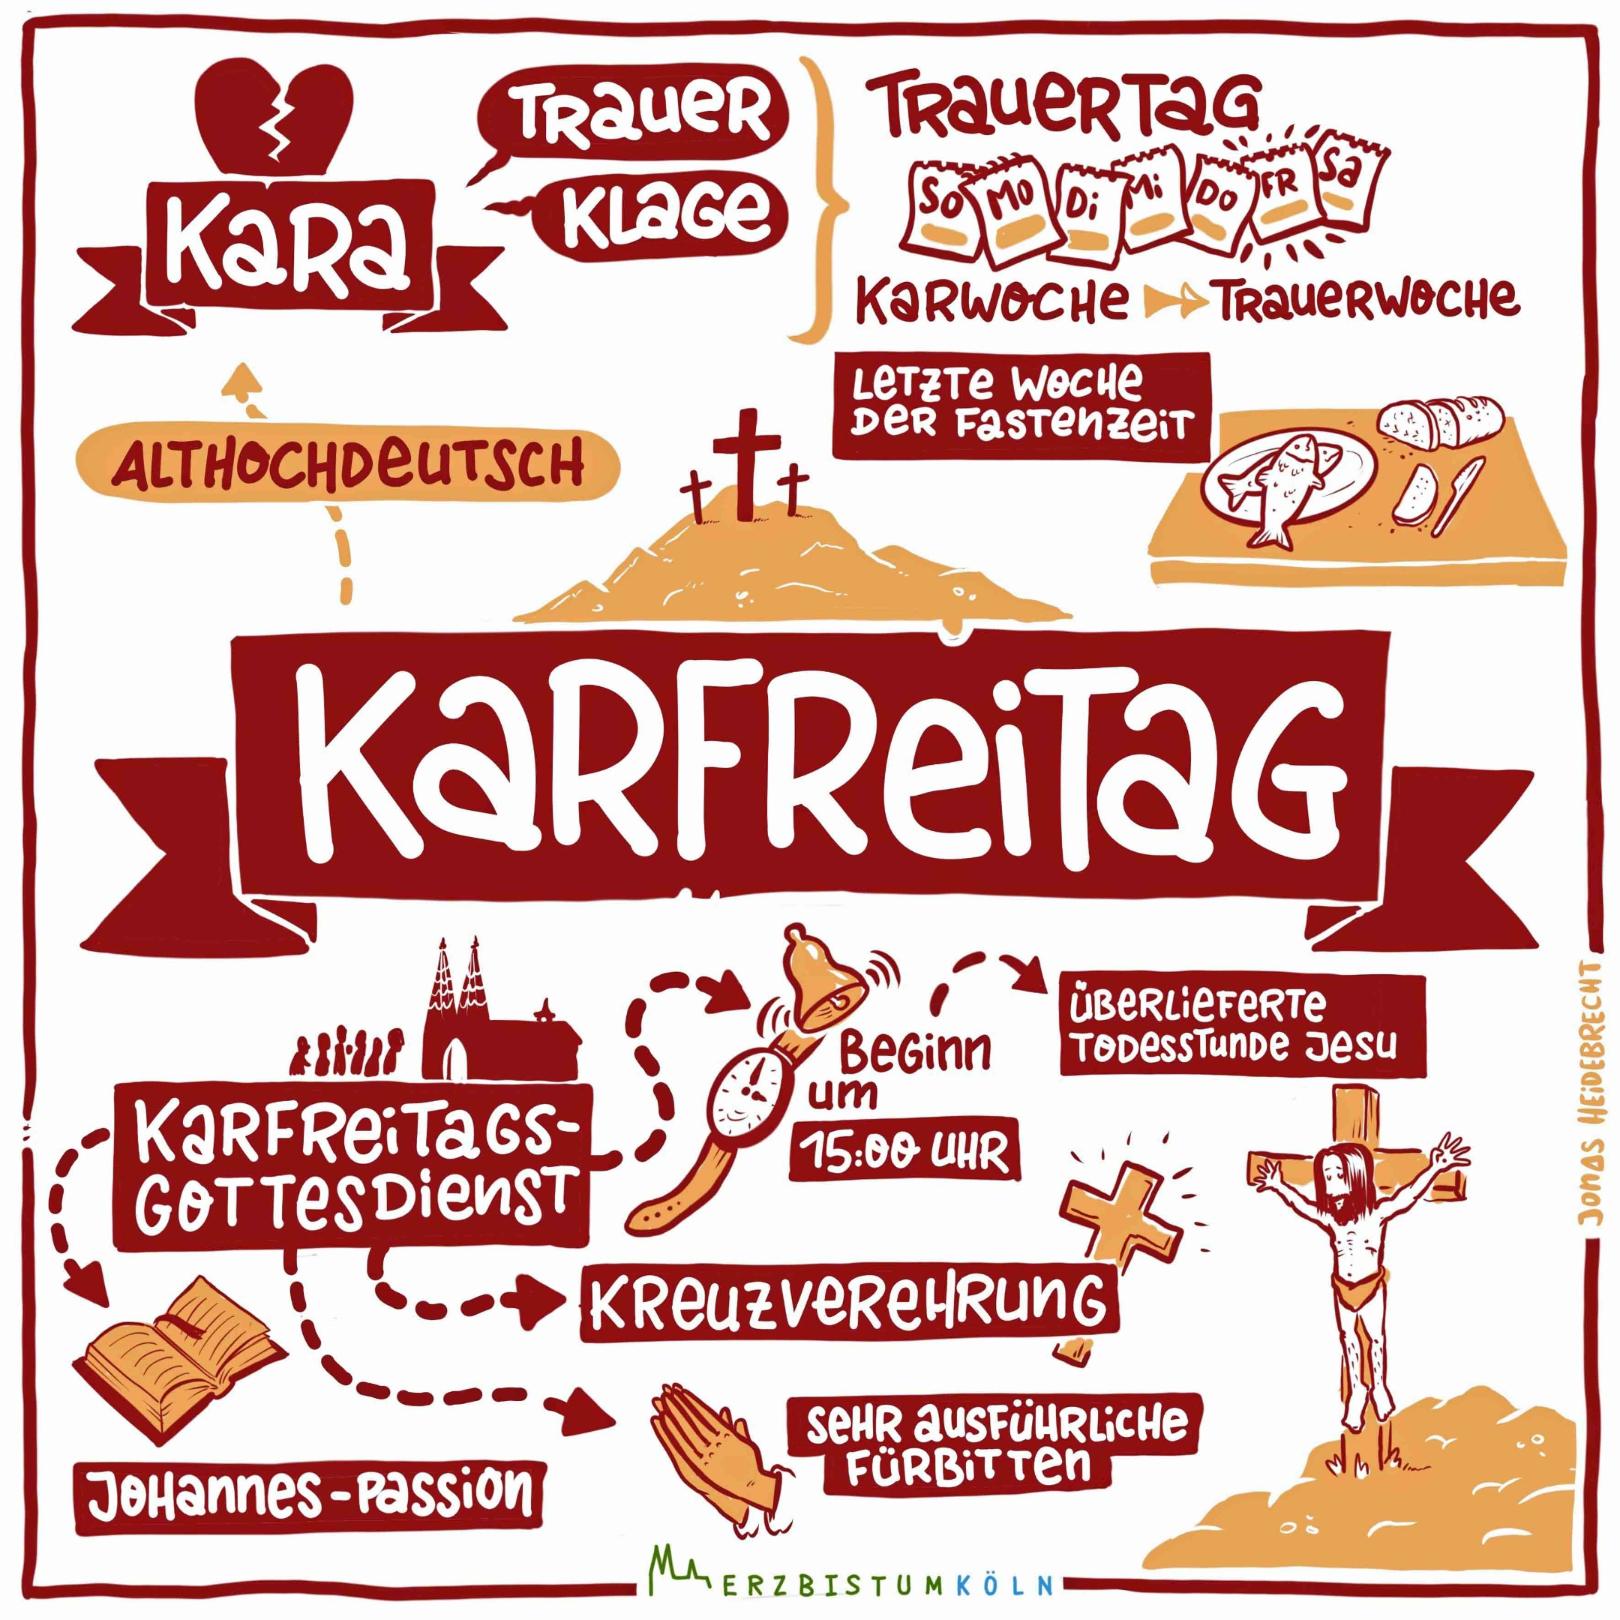 Karfreitag erklärt (c) Jonas Heidebrecht (Erzbistum Köln) auf www.pfarrbriefservice.de